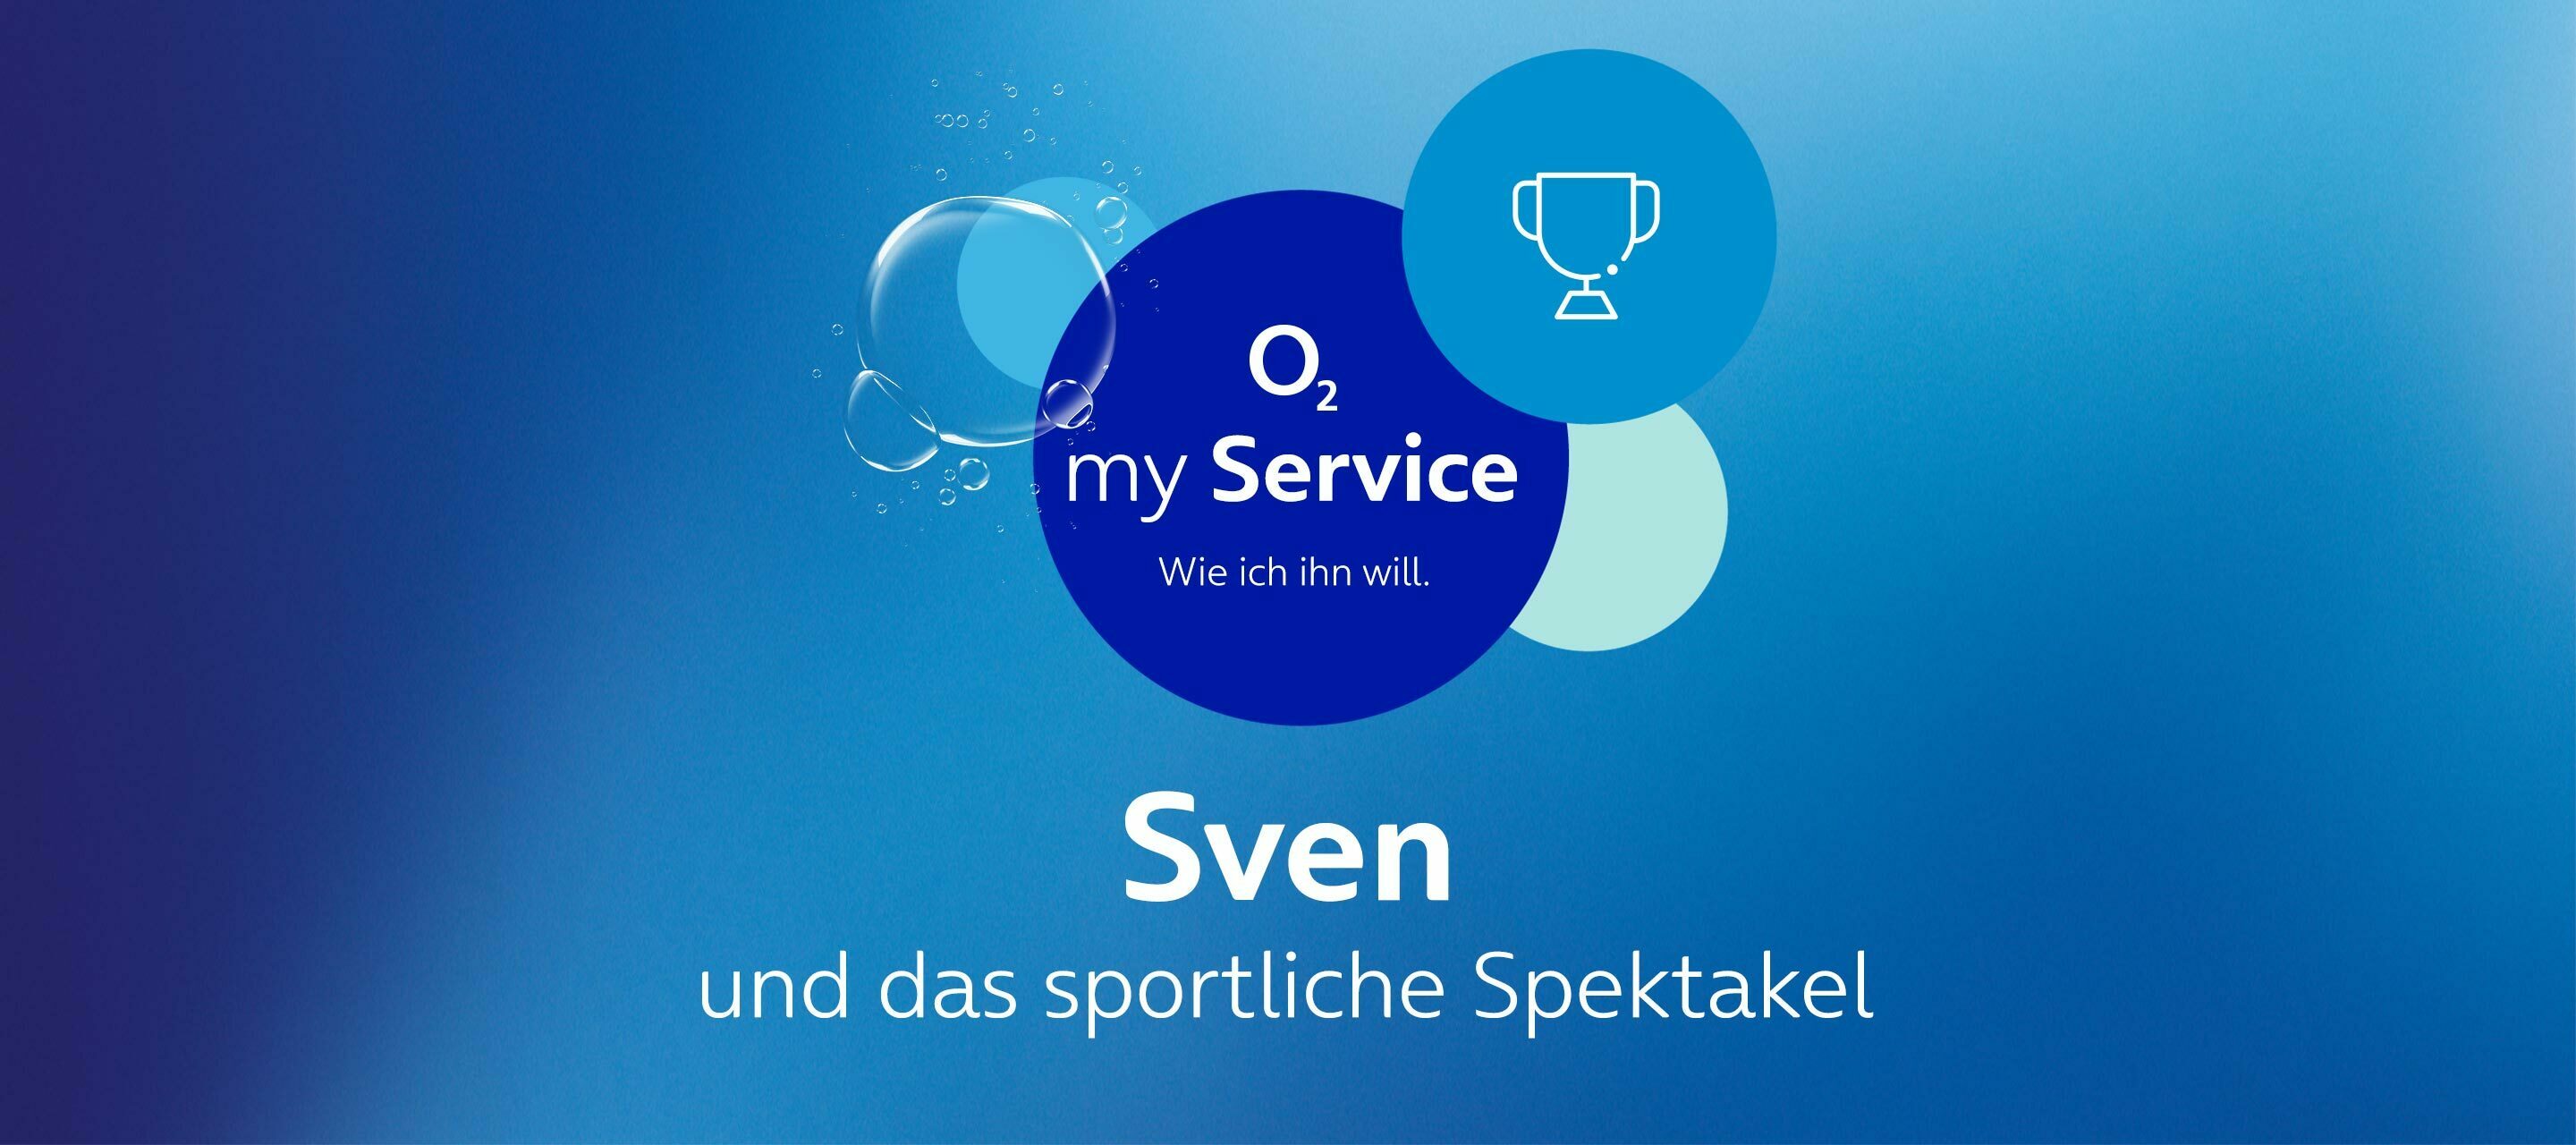 Die Gesichter hinter O₂ my Service – Sven und das sportliche Spektakel